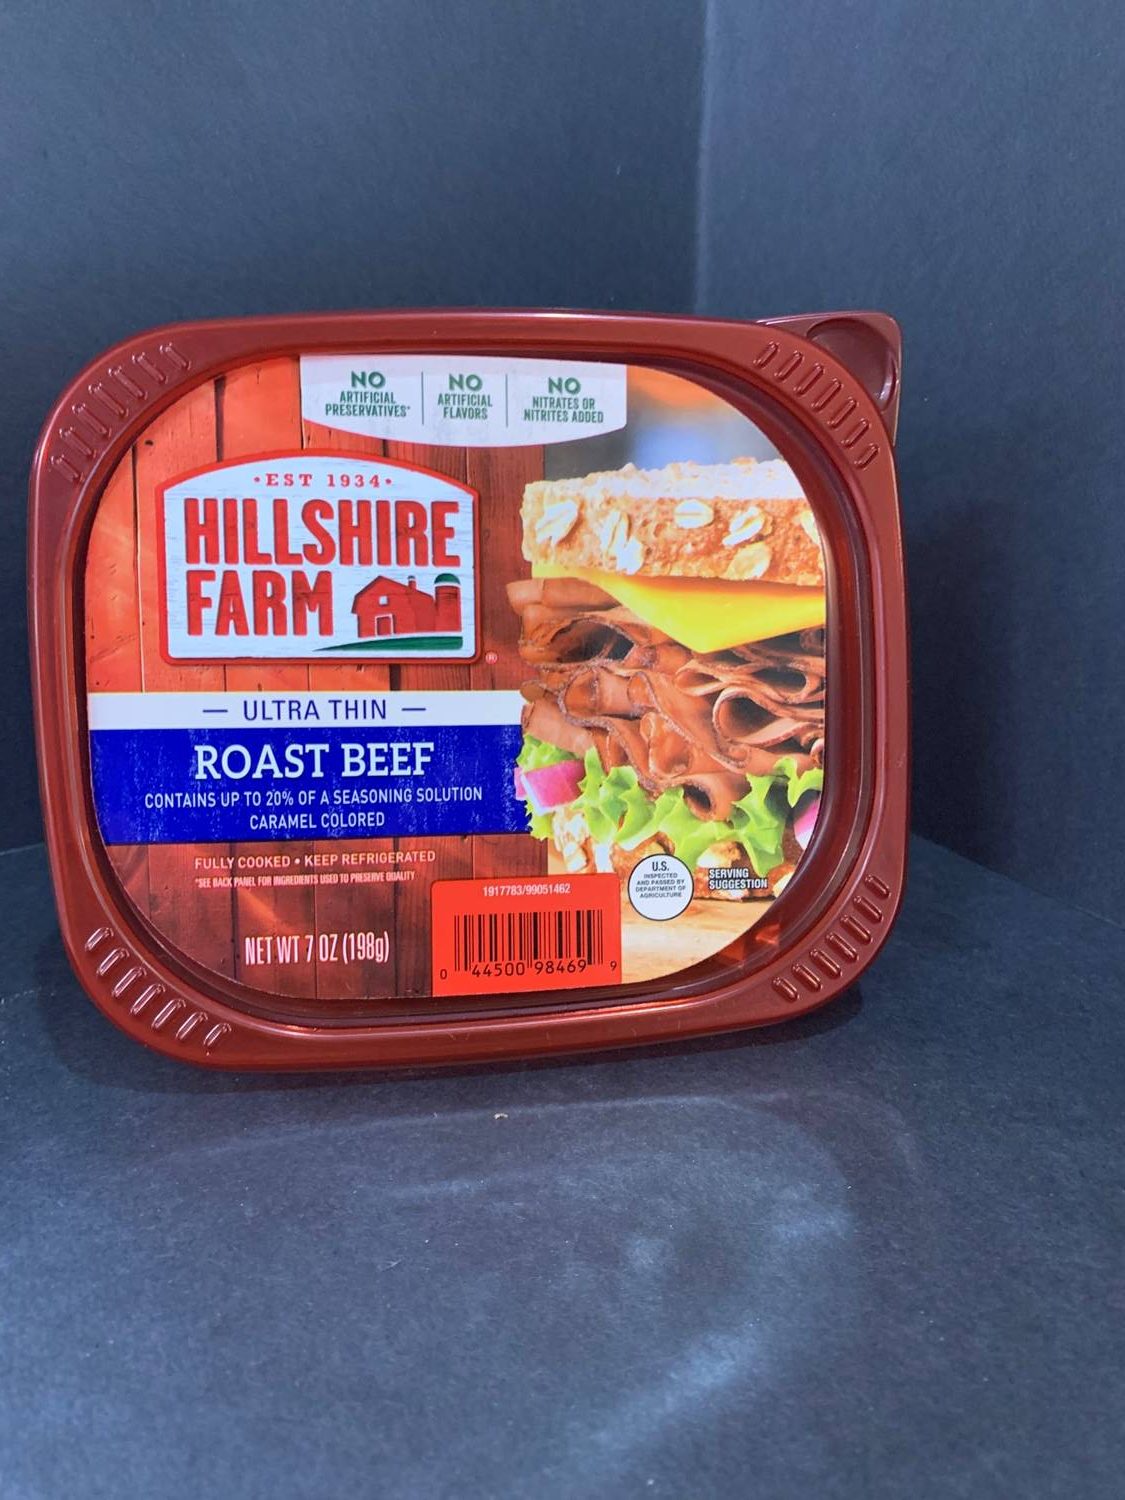 Roast Beef slices